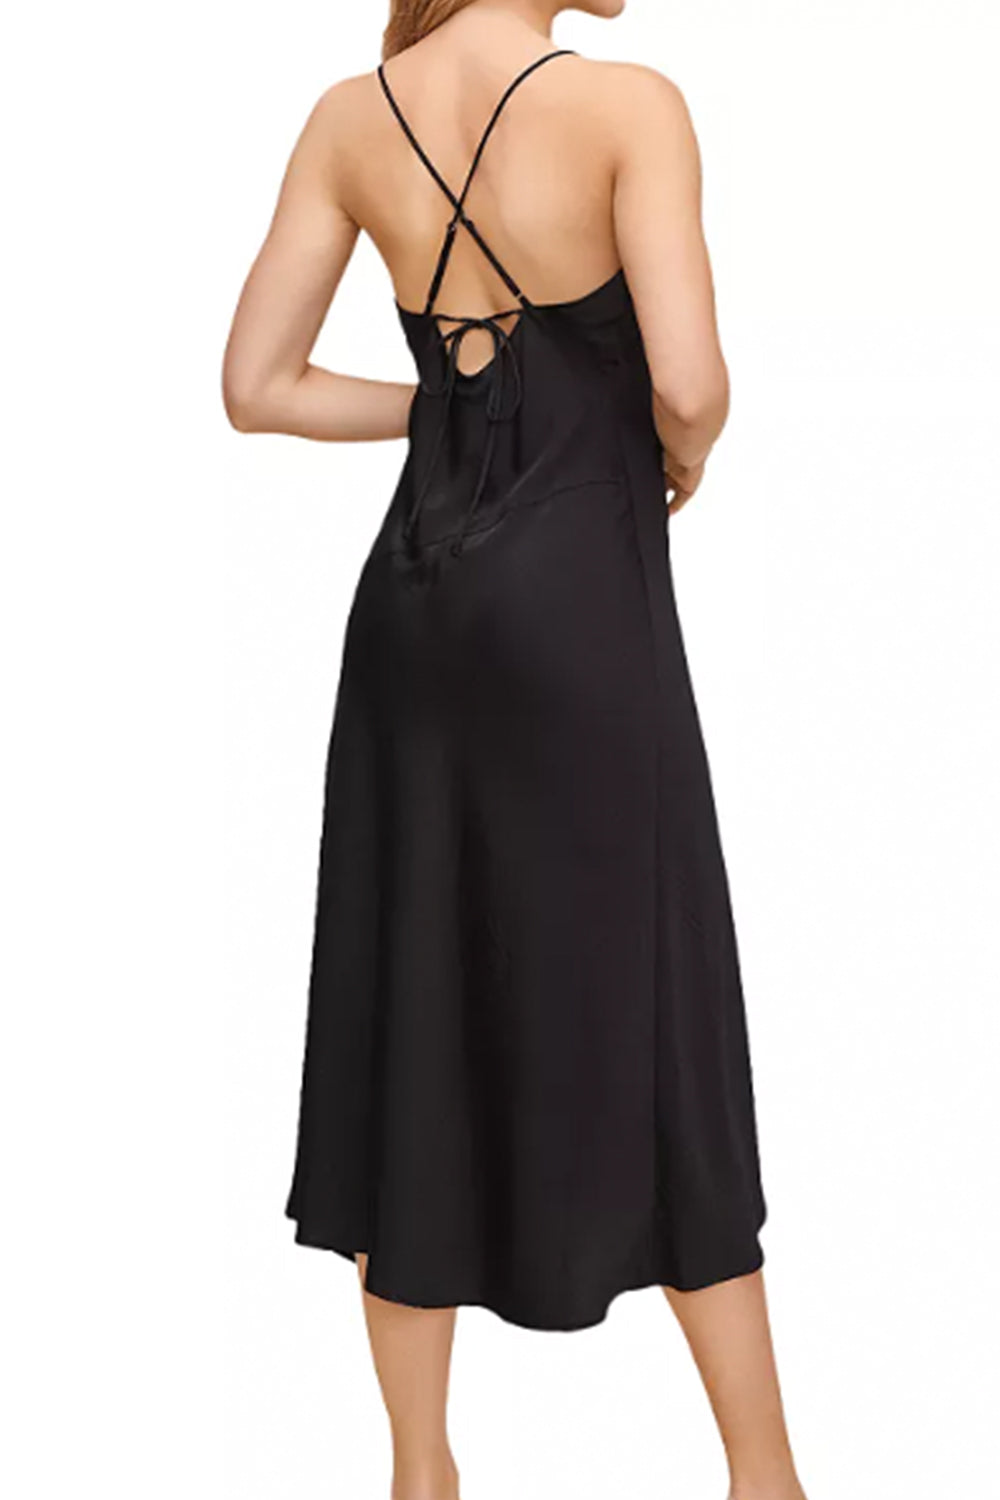 Frankie Black Dress – Styched Fashion